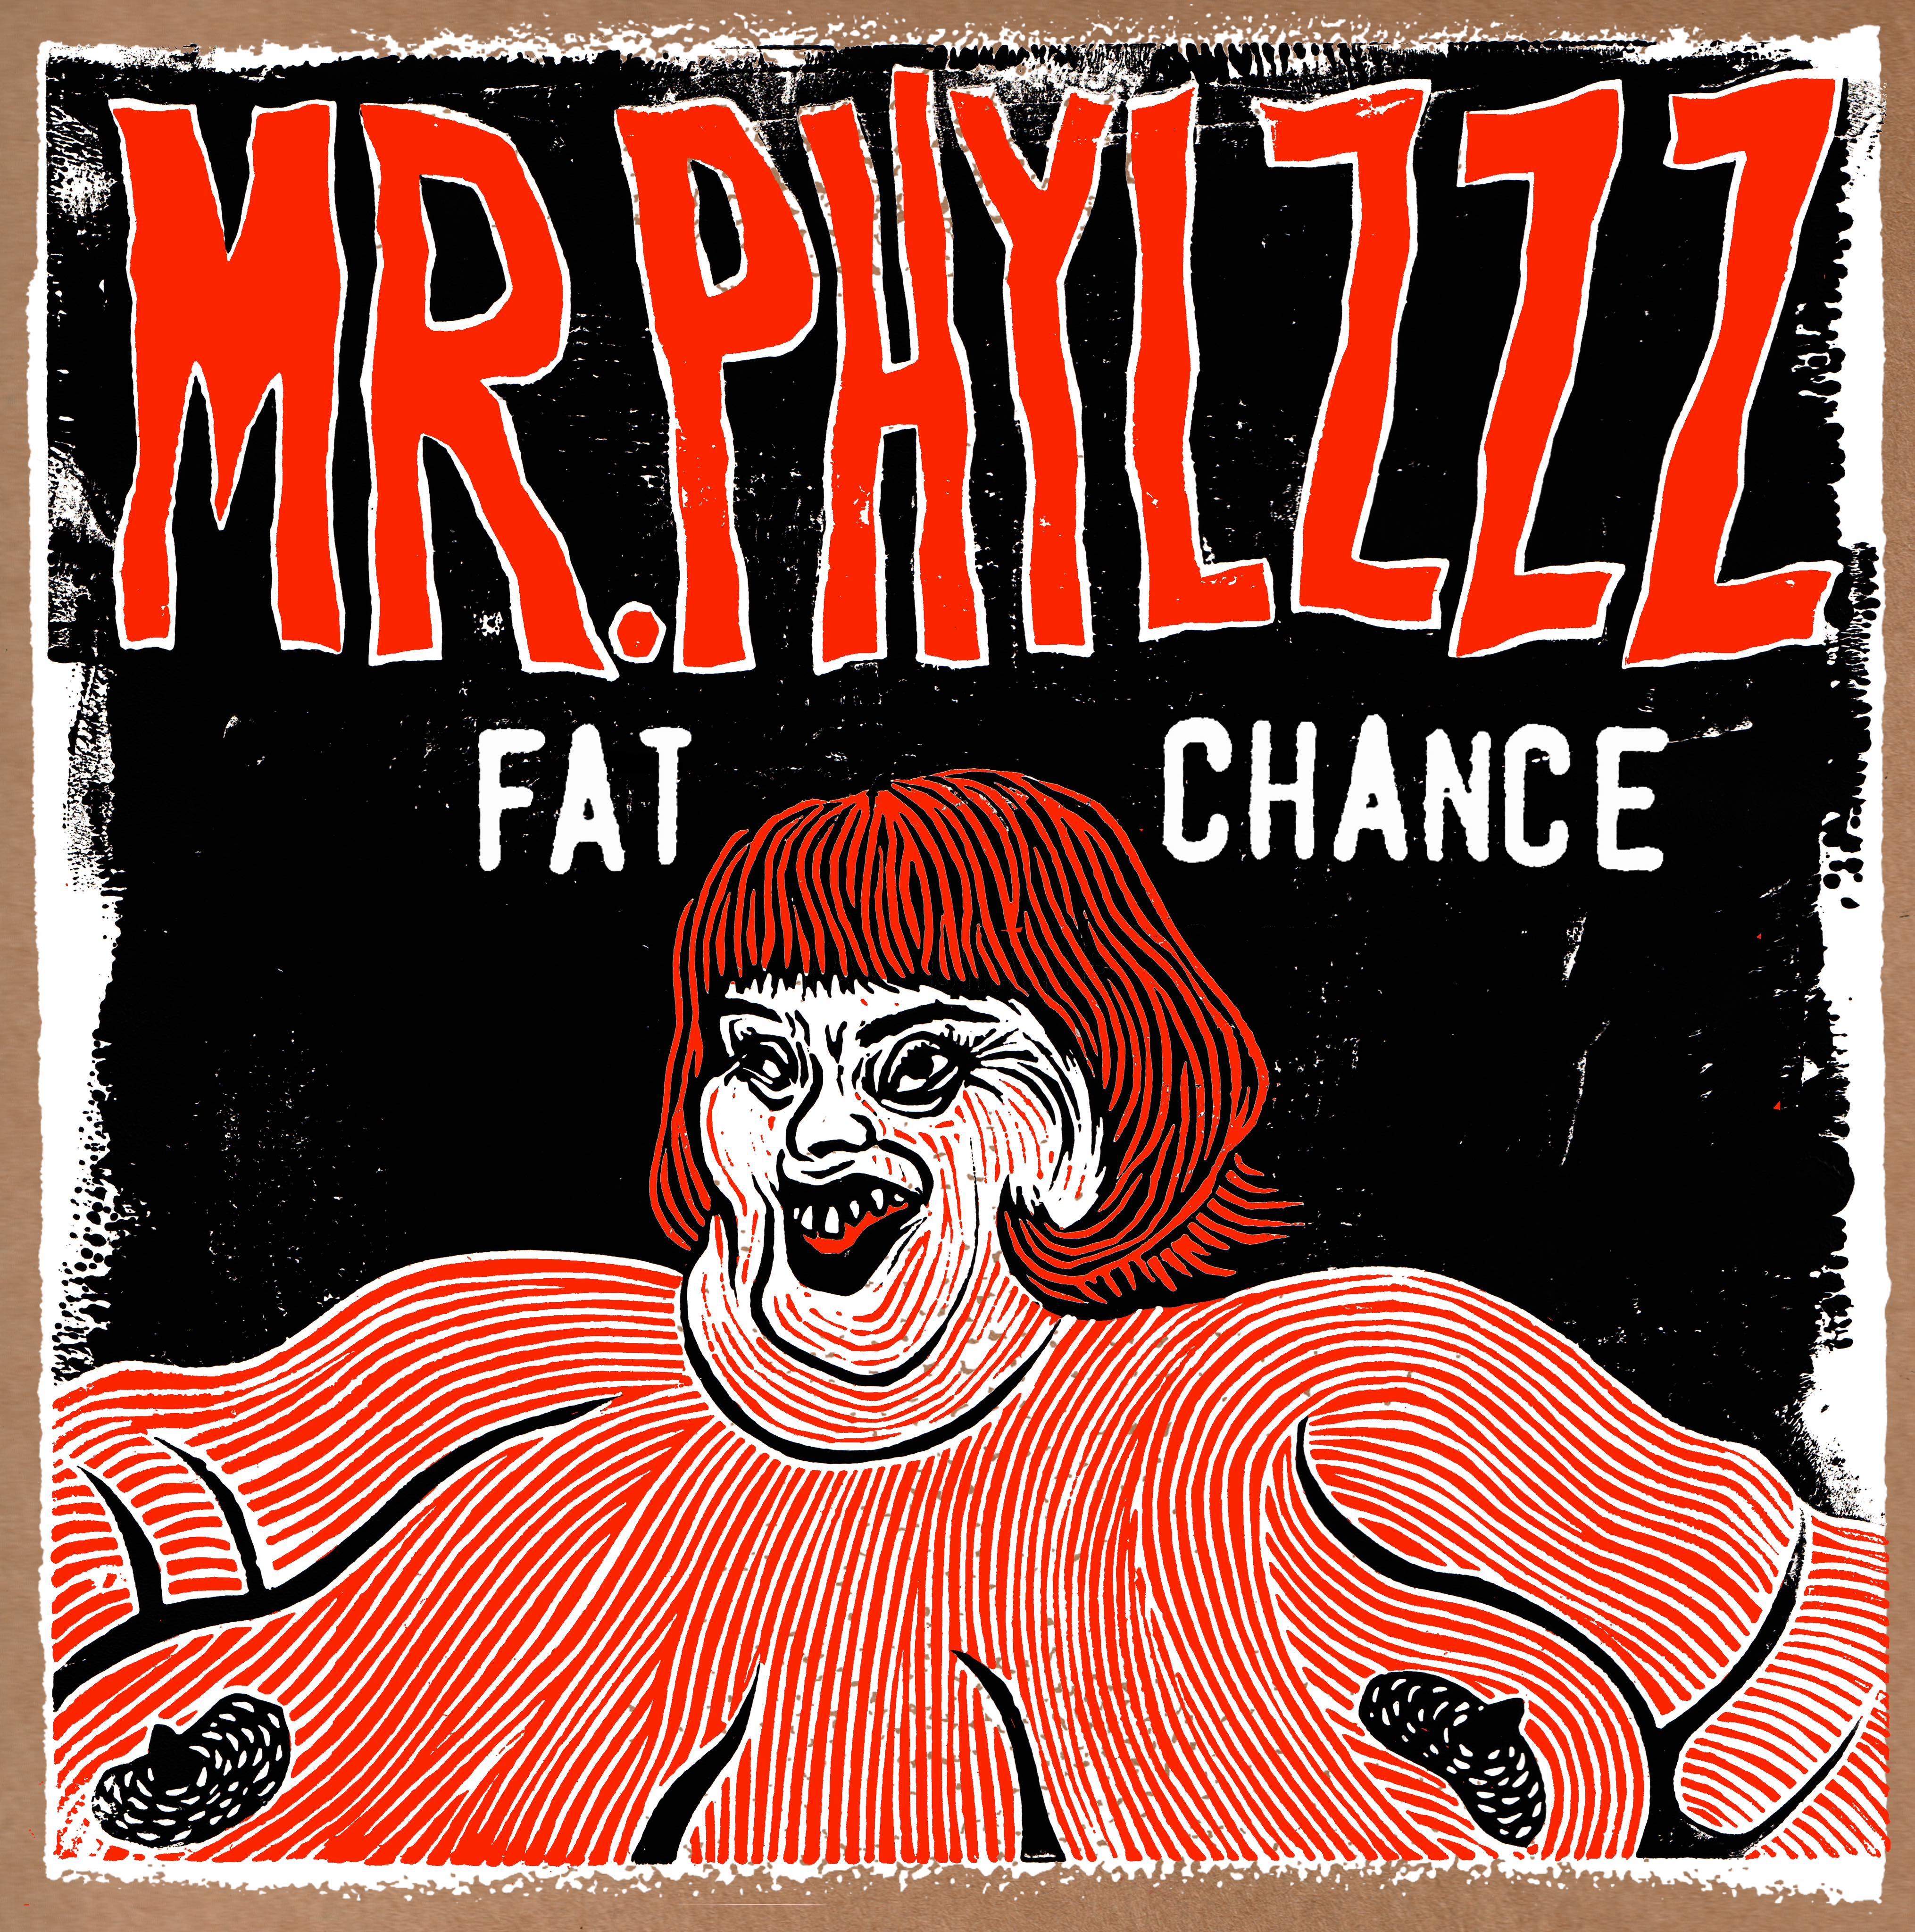 Mr Phlyzzz – “Fat Chance” Album Review